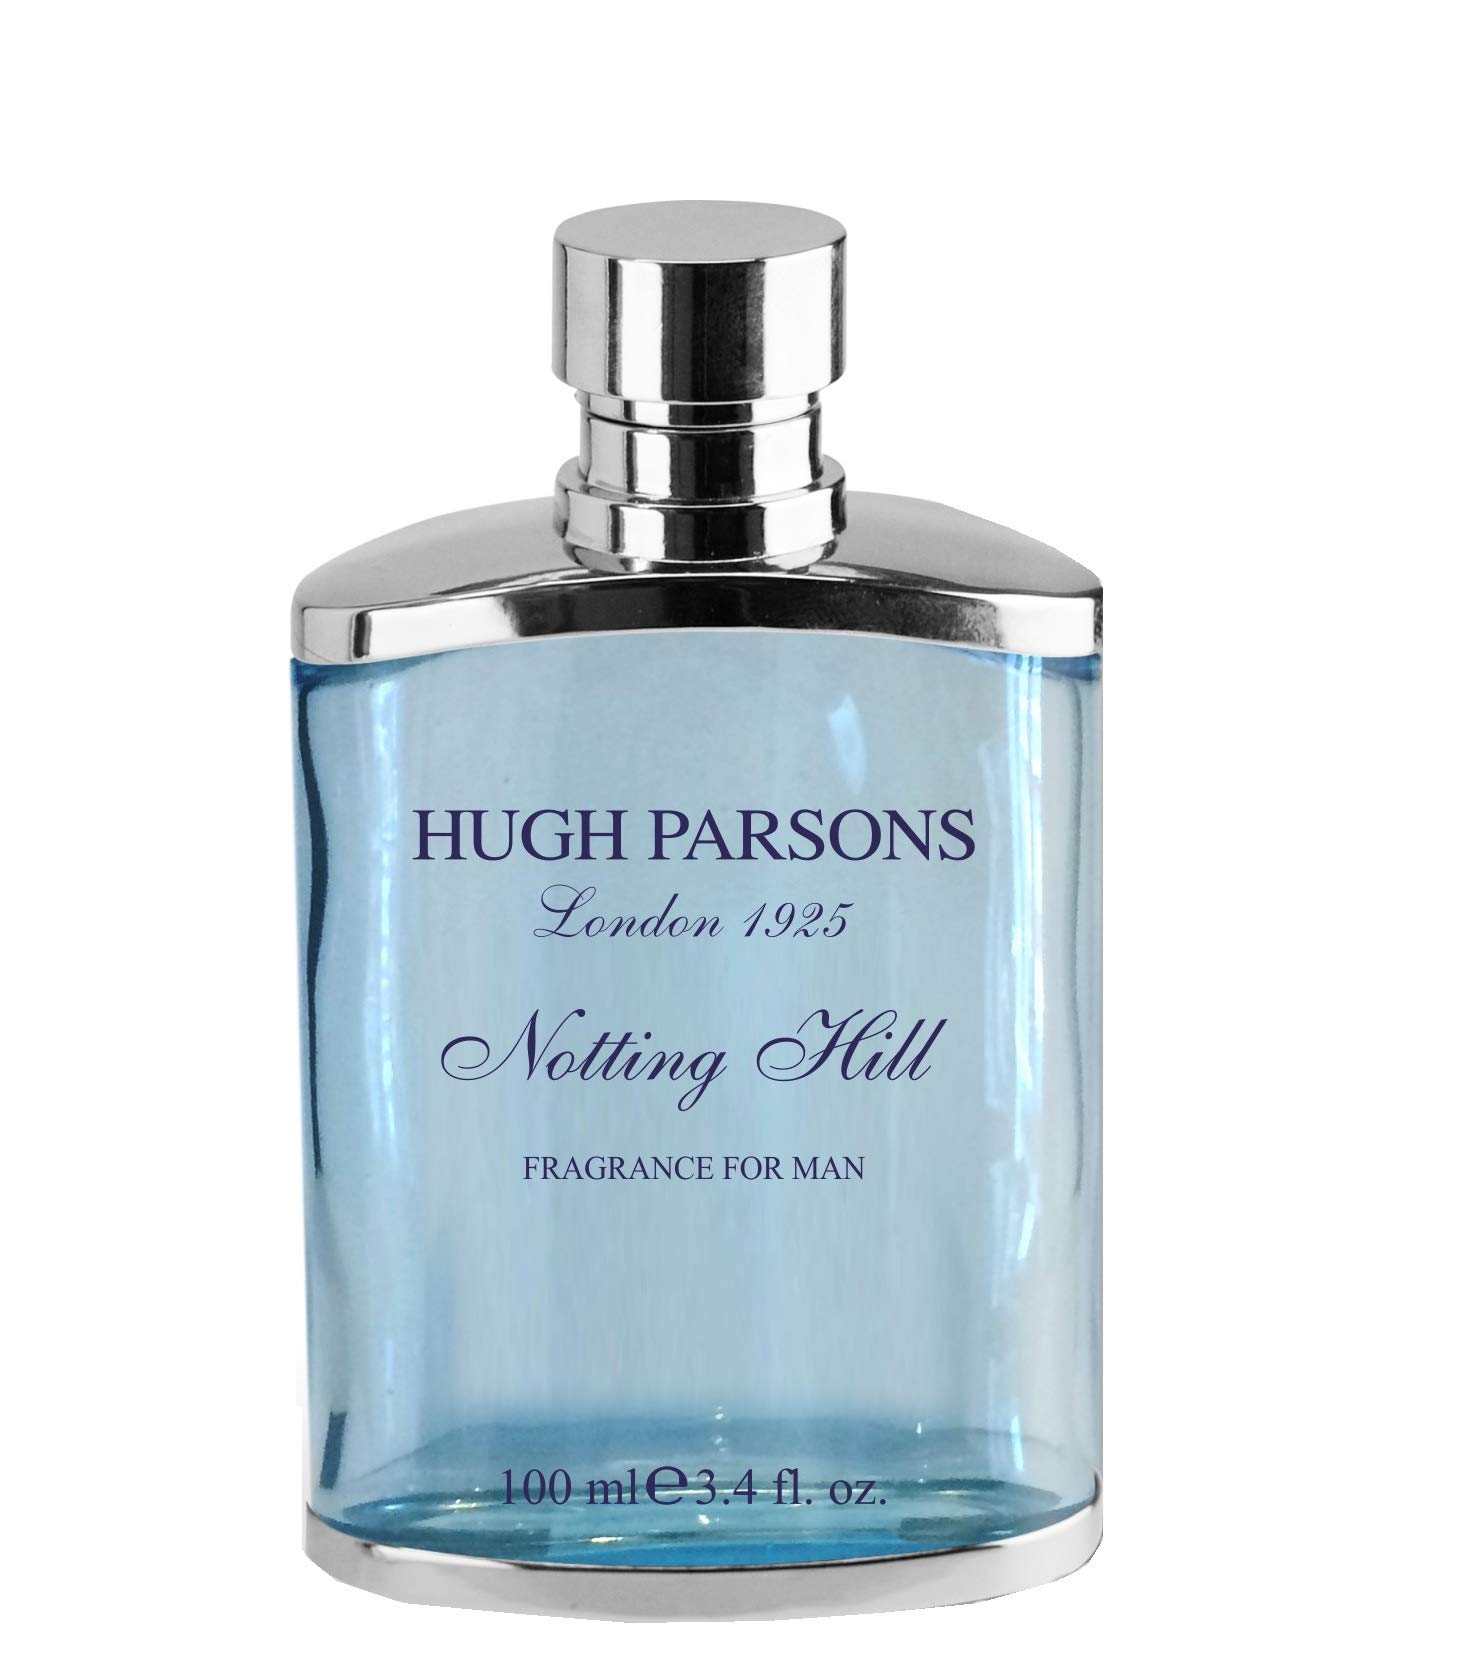 Hugh Parsons Notting Hill EDP, 100 ml